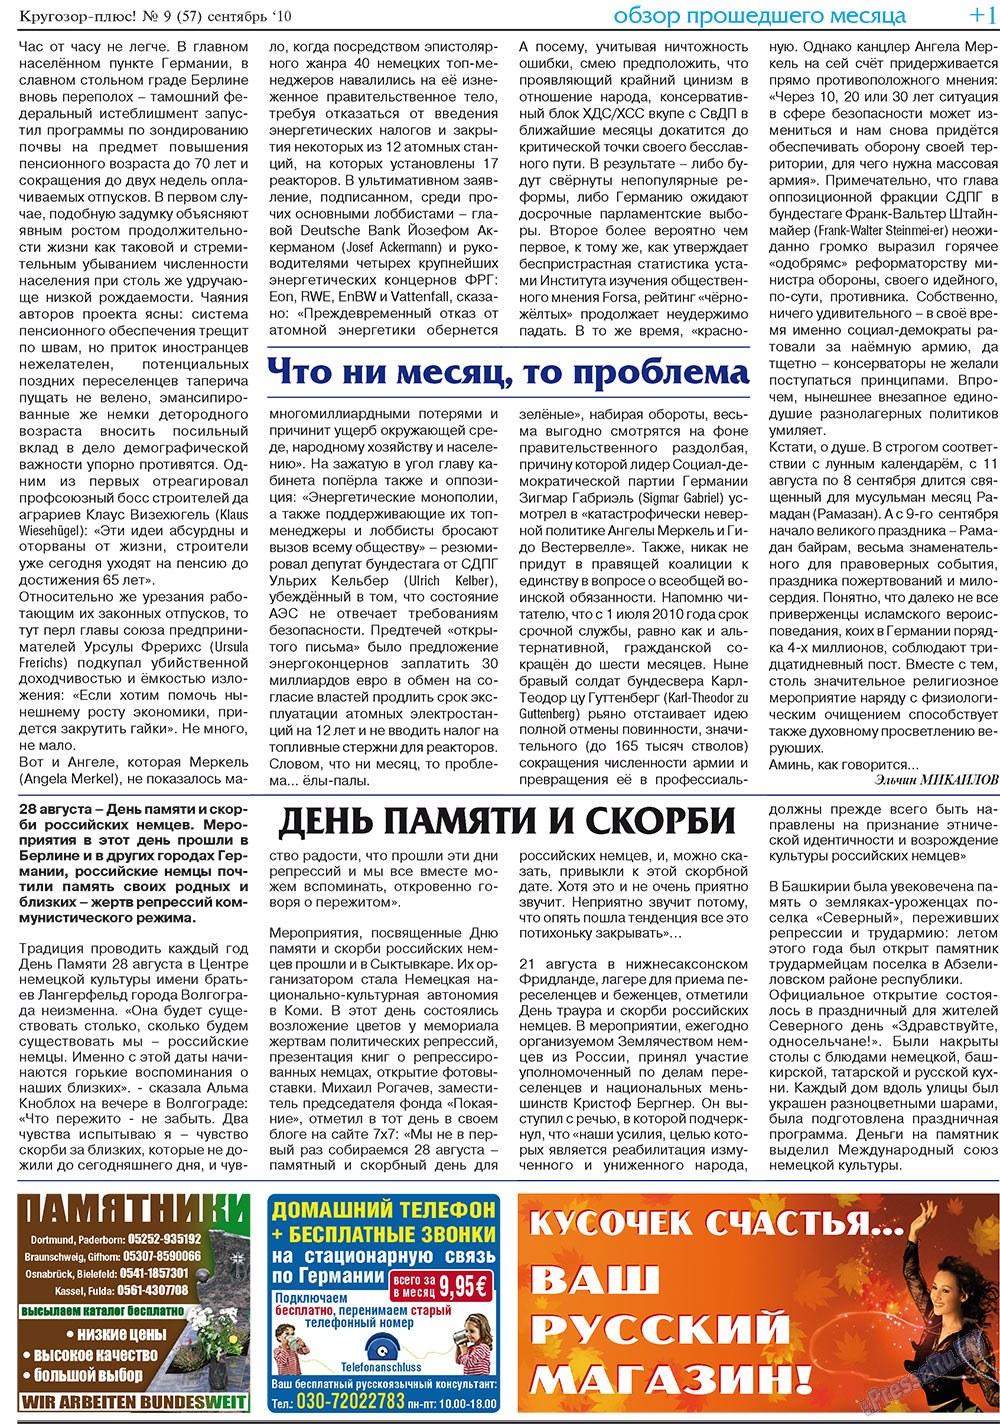 Кругозор плюс!, газета. 2010 №9 стр.17